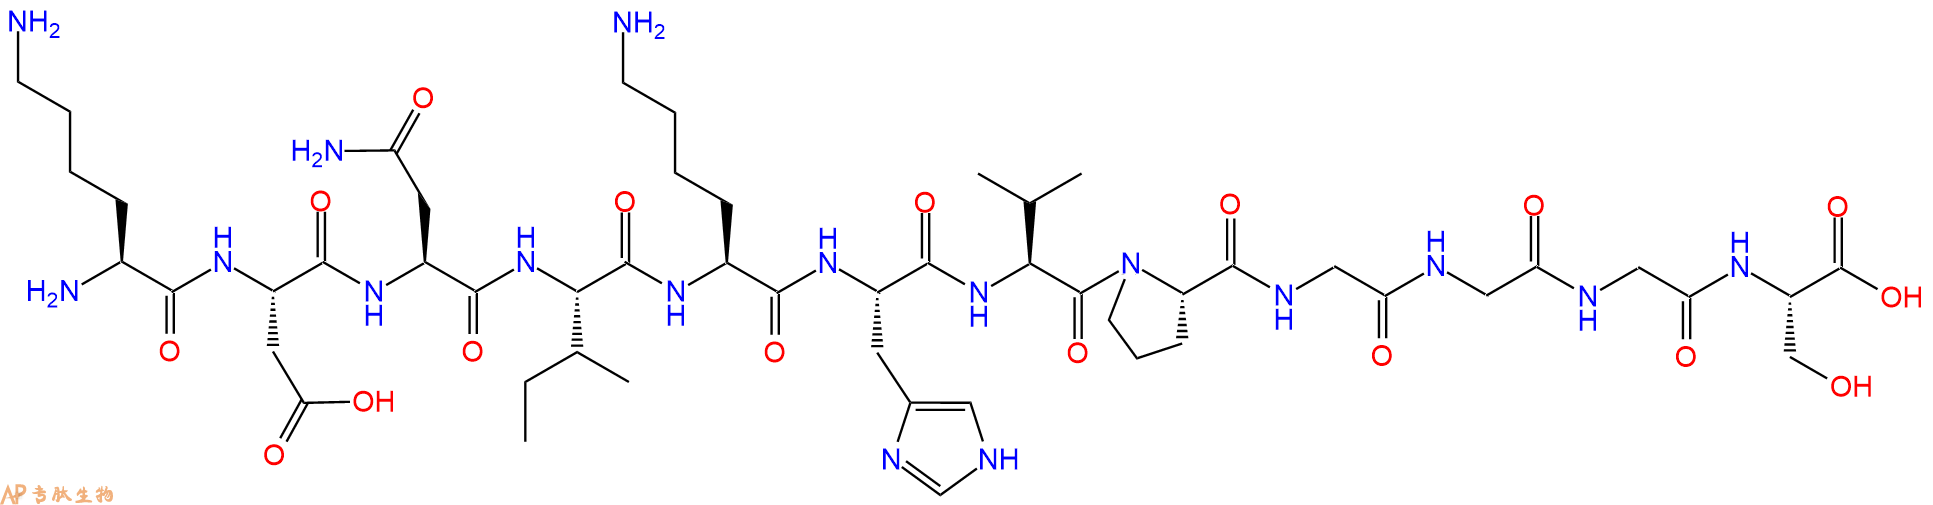 专肽生物产品Tau肽 Tau Peptide (294-305) (human)1428135-29-8